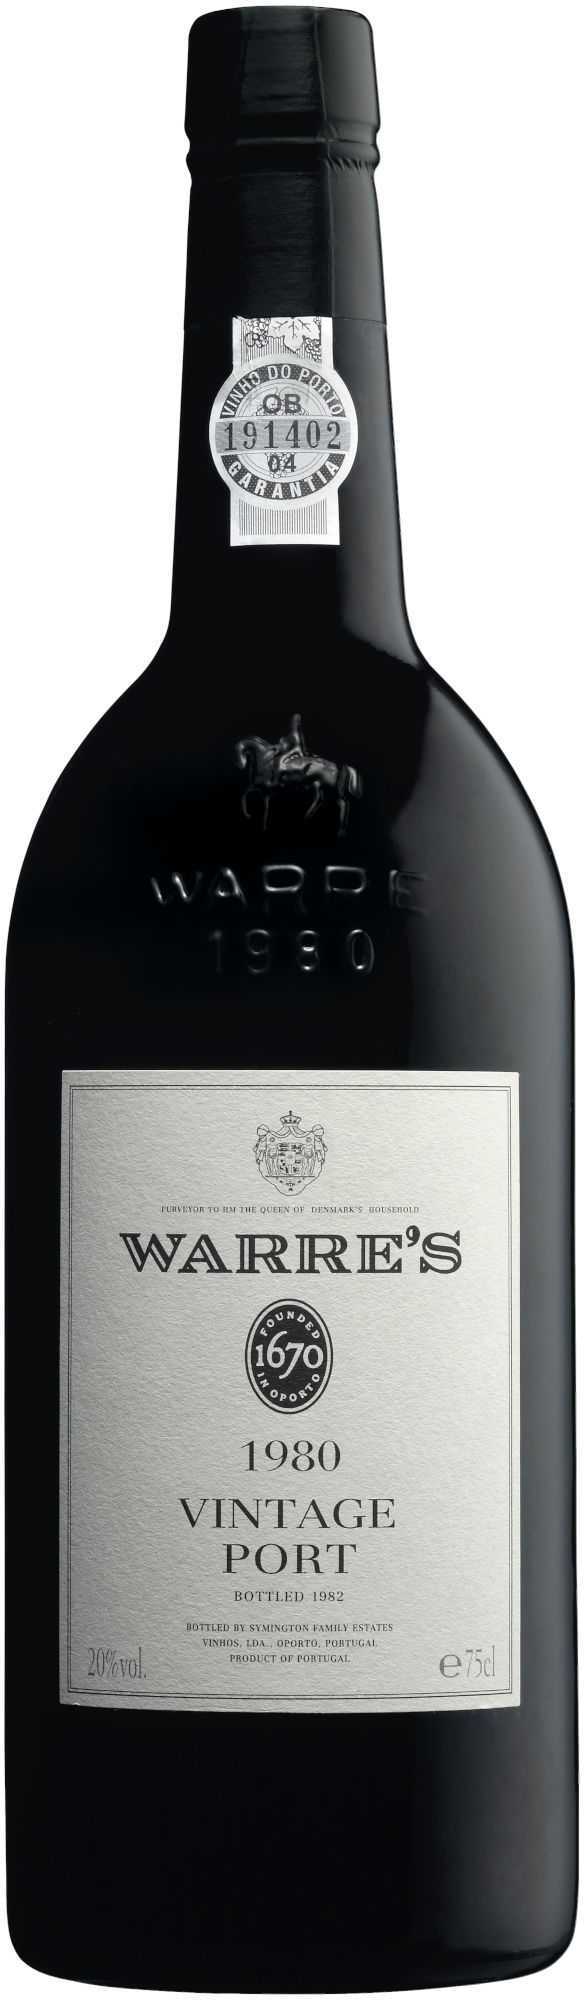 Warres-Vintage-Port-1980